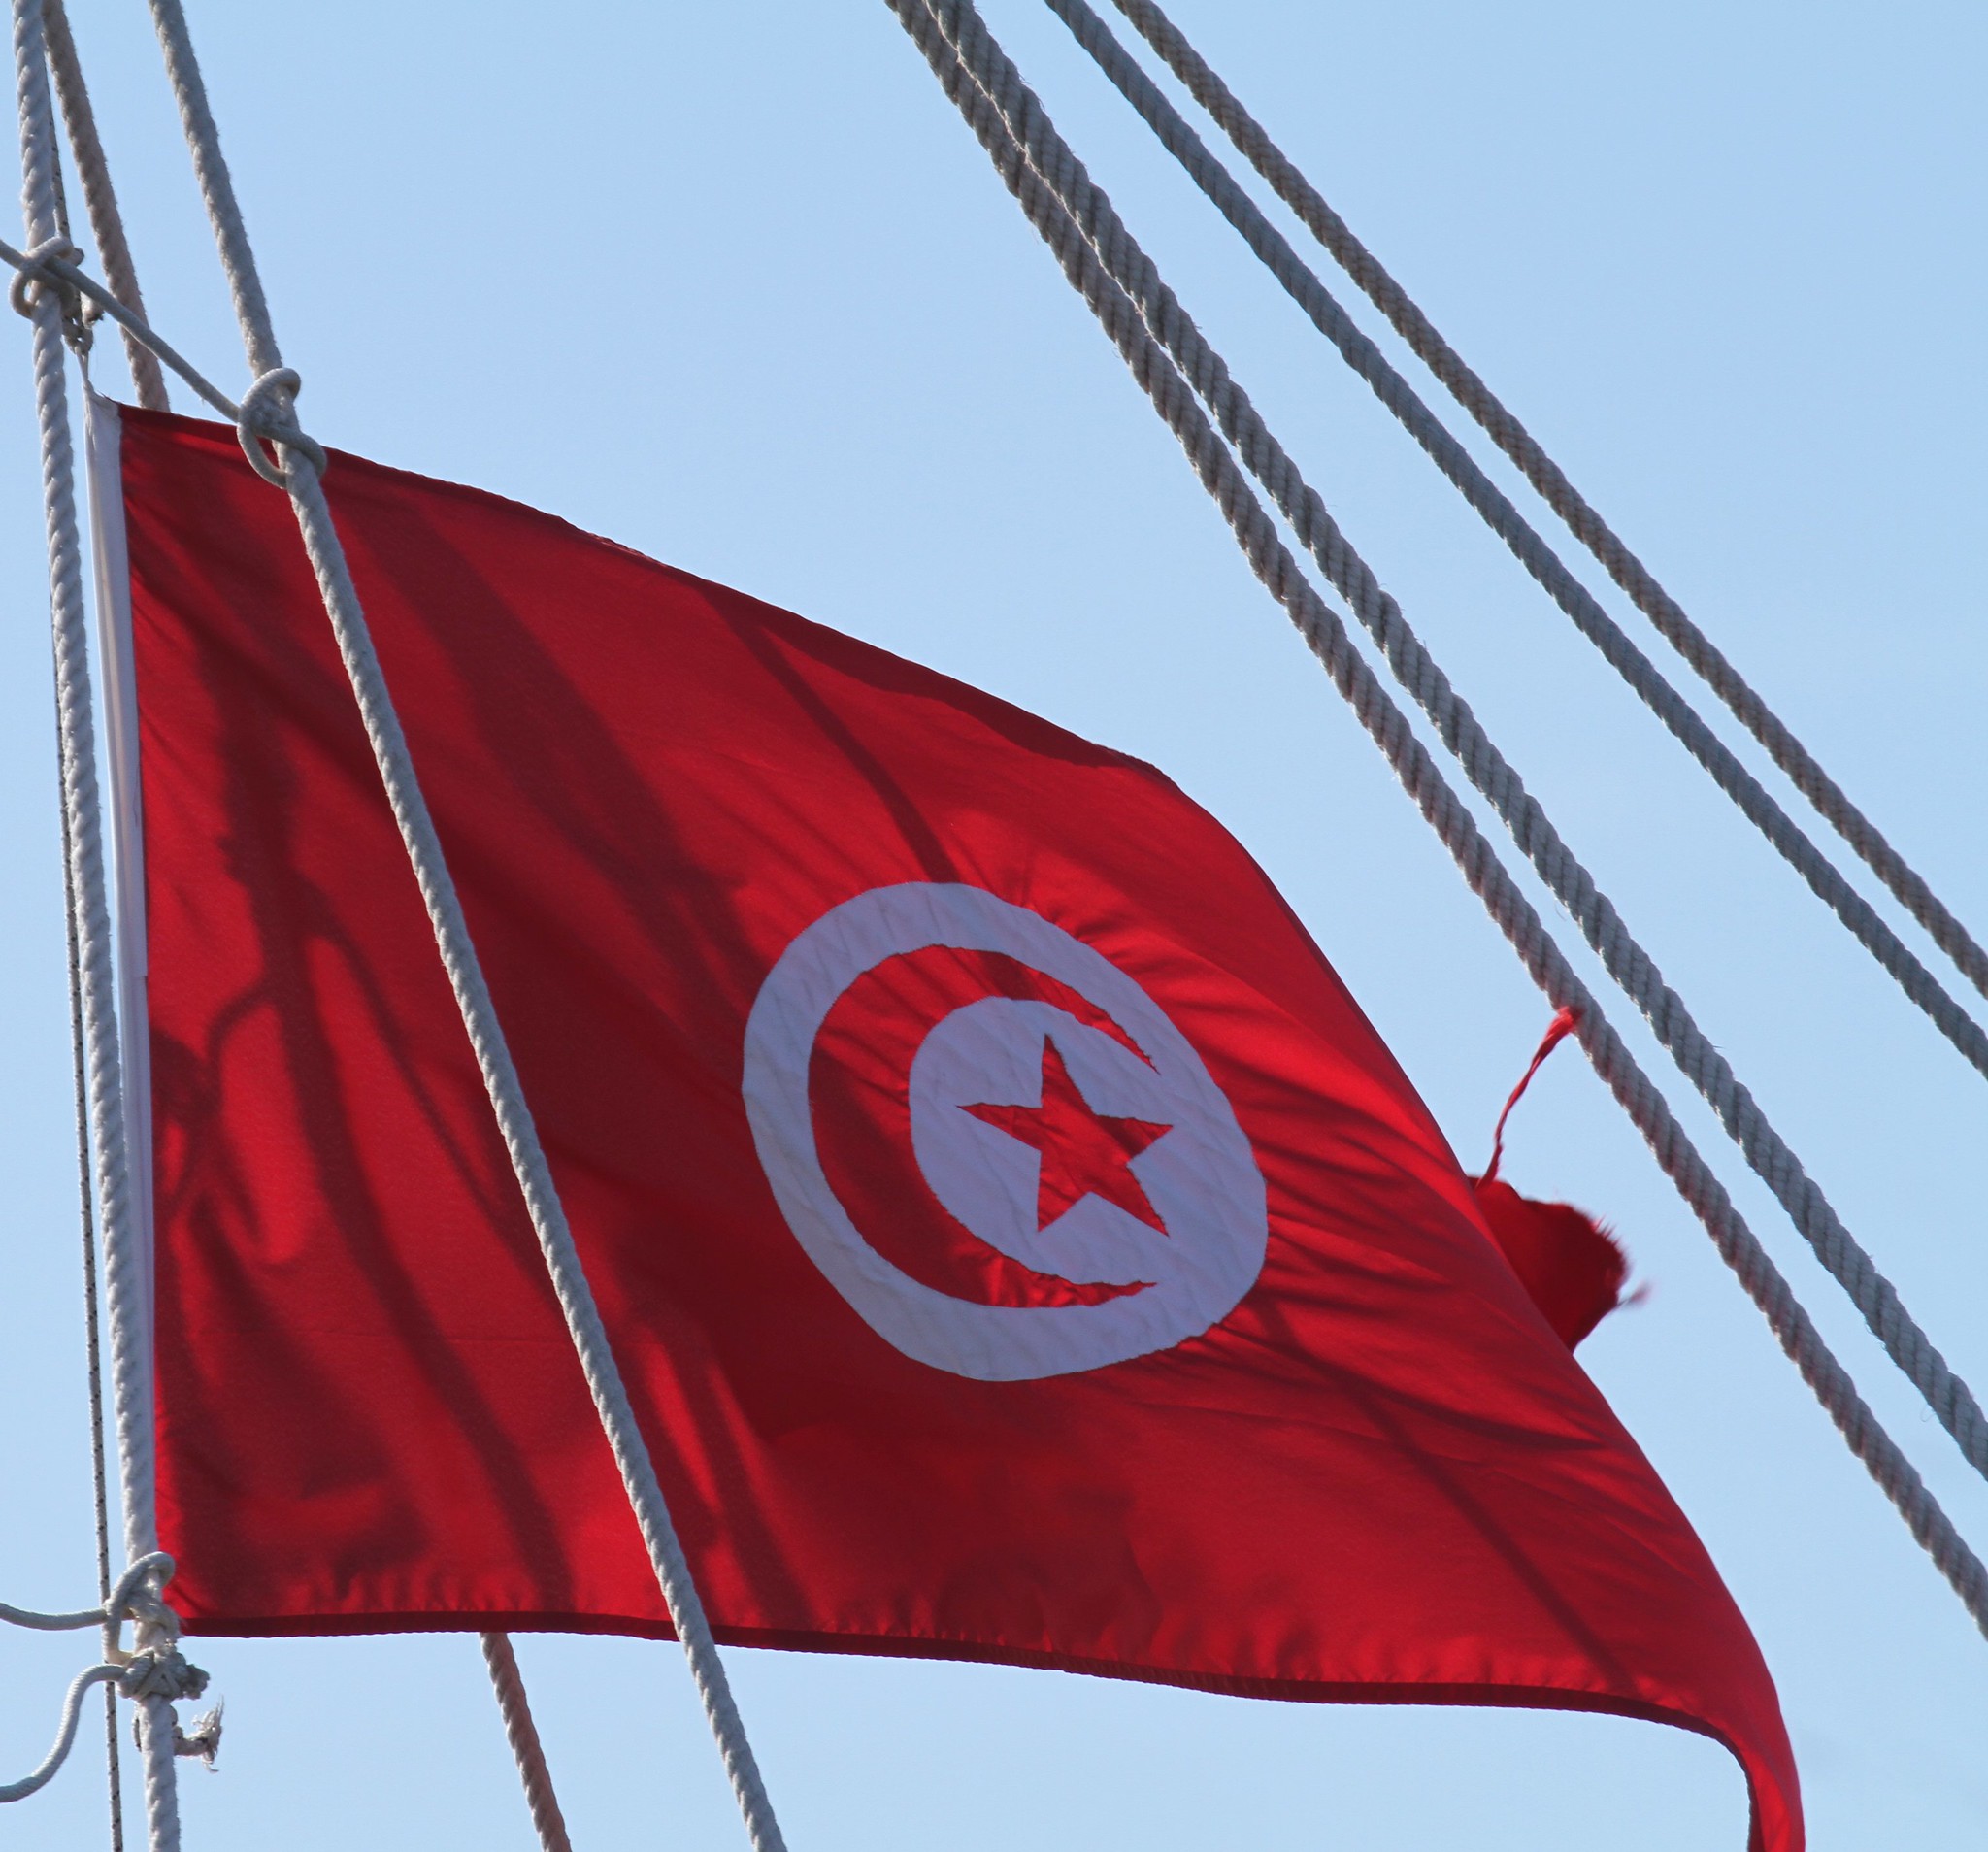 TUNÍSIA: OS DESDOBRAMENTOS DA REVOLUÇÃO DE JASMIM E A LUTA POR DIAS MELHORES